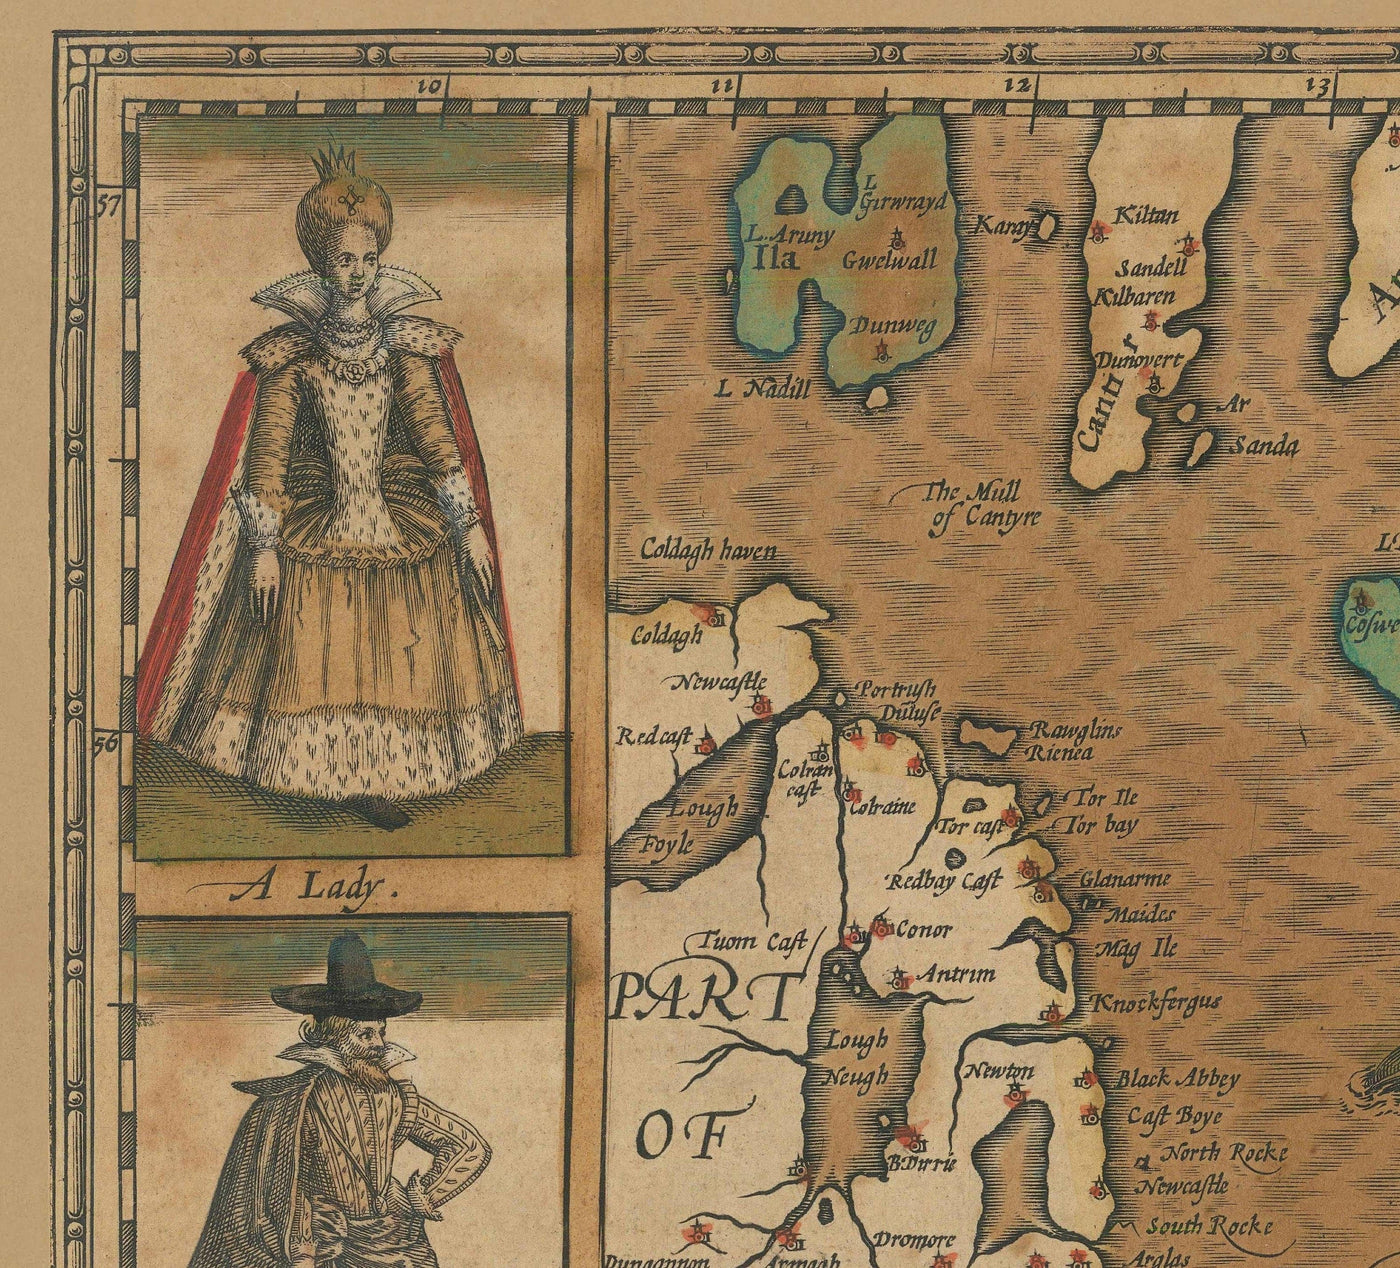 Alte Karte von England & Wales von John Speed, 1611 - Seltene handfarbene Tabelle des "Kingdome of England"